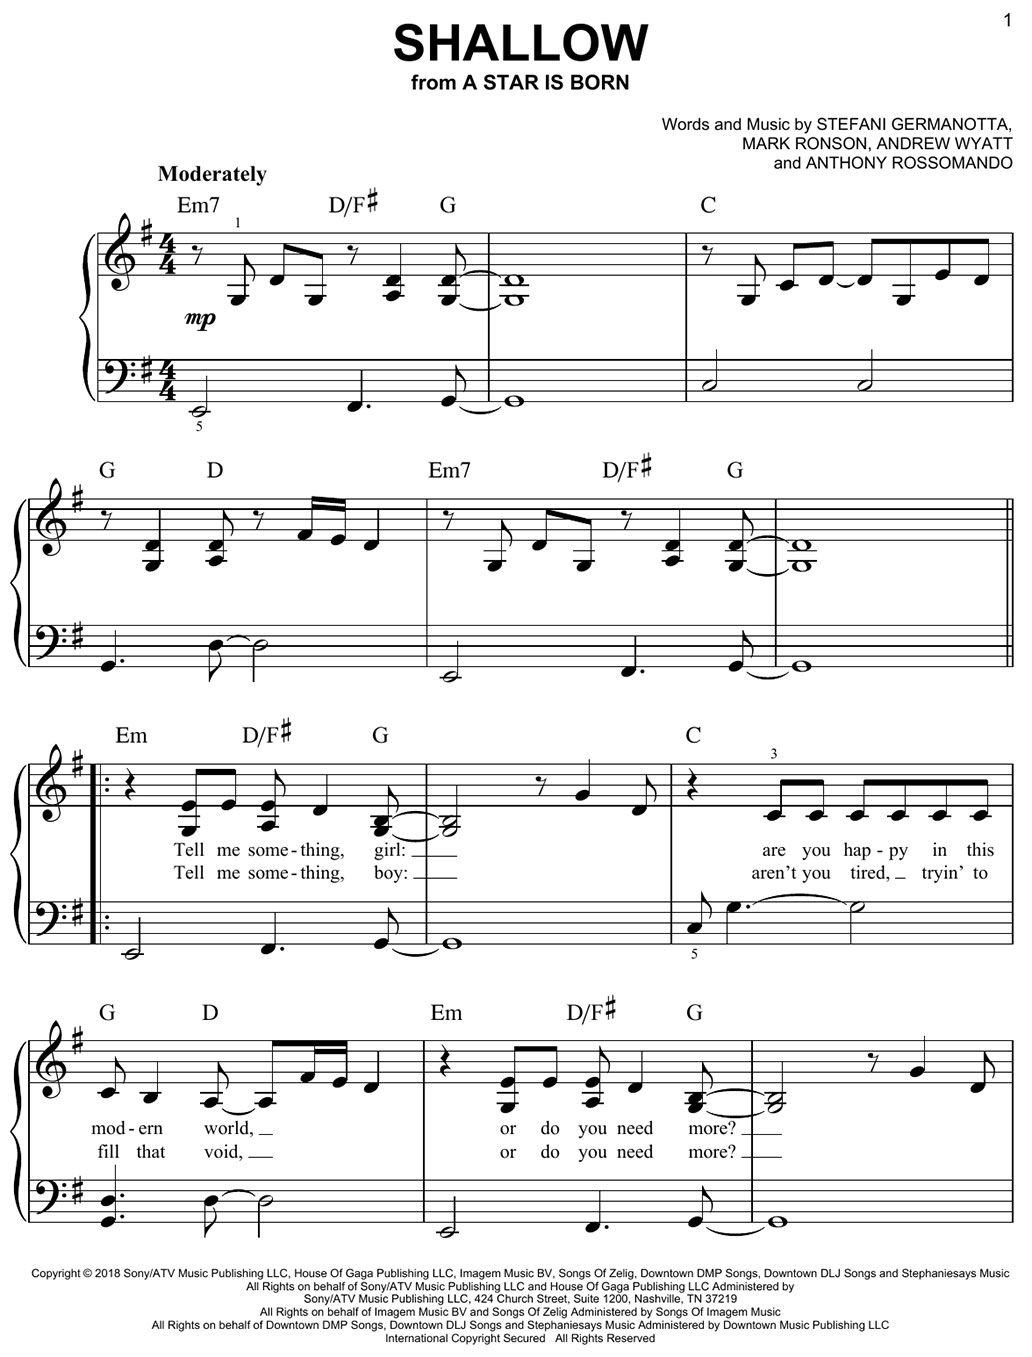 shallow piano sheet music notes